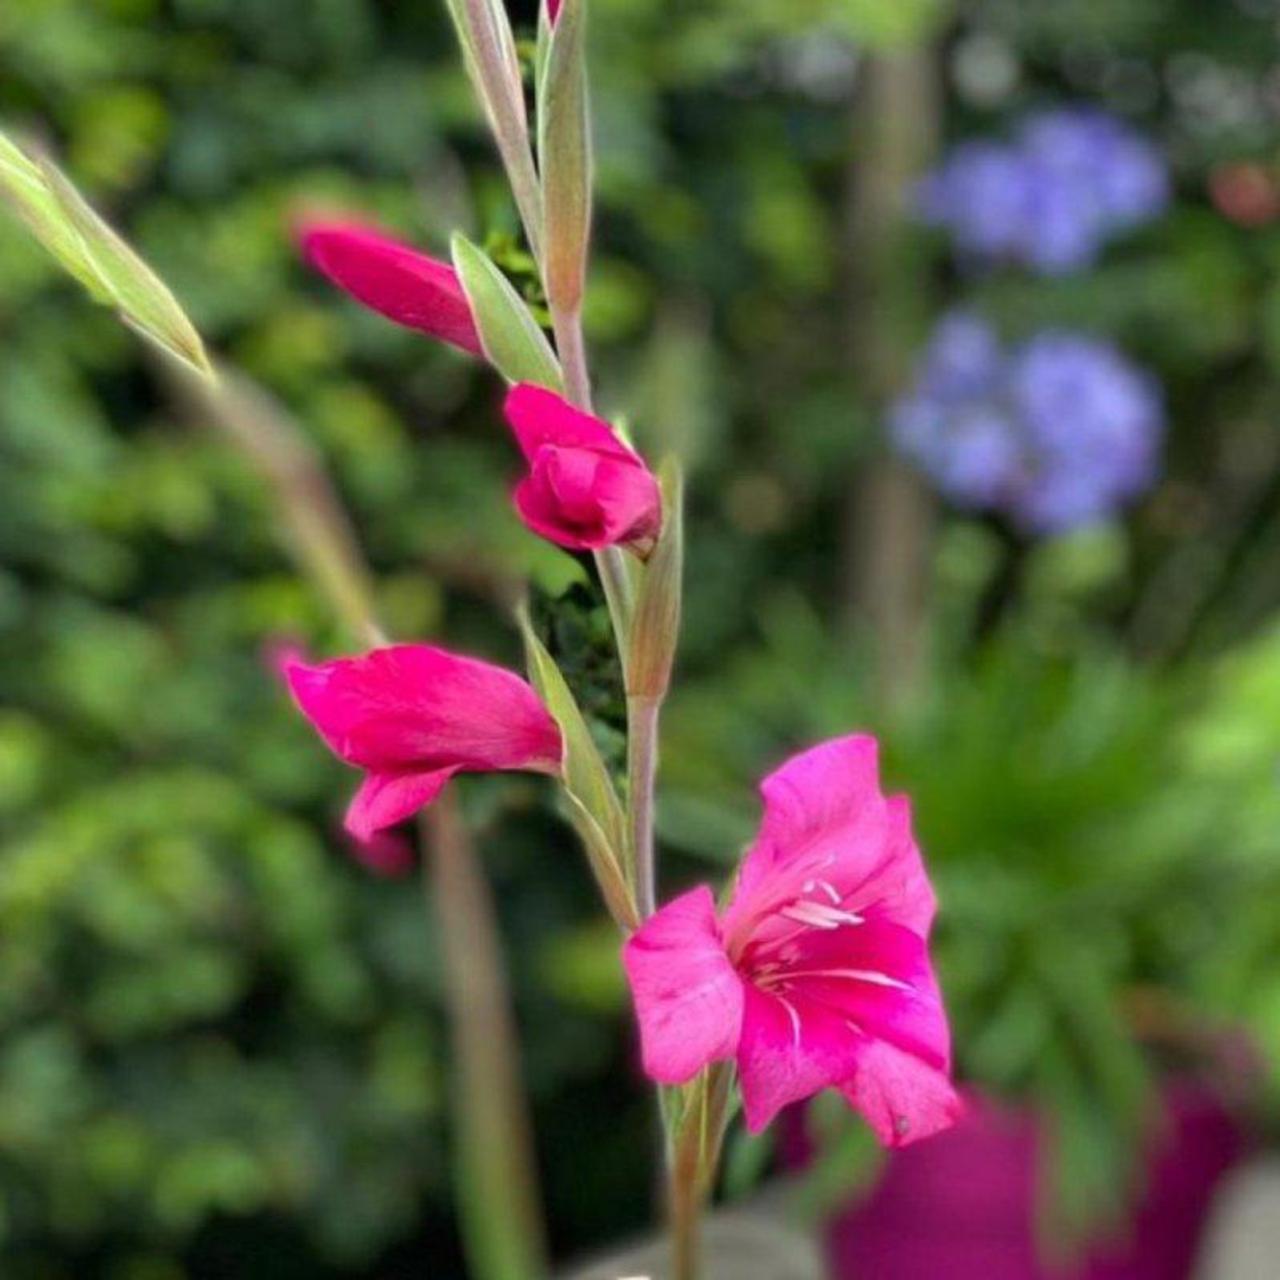 Gladiolus nanus 'Summer Jewel' plant